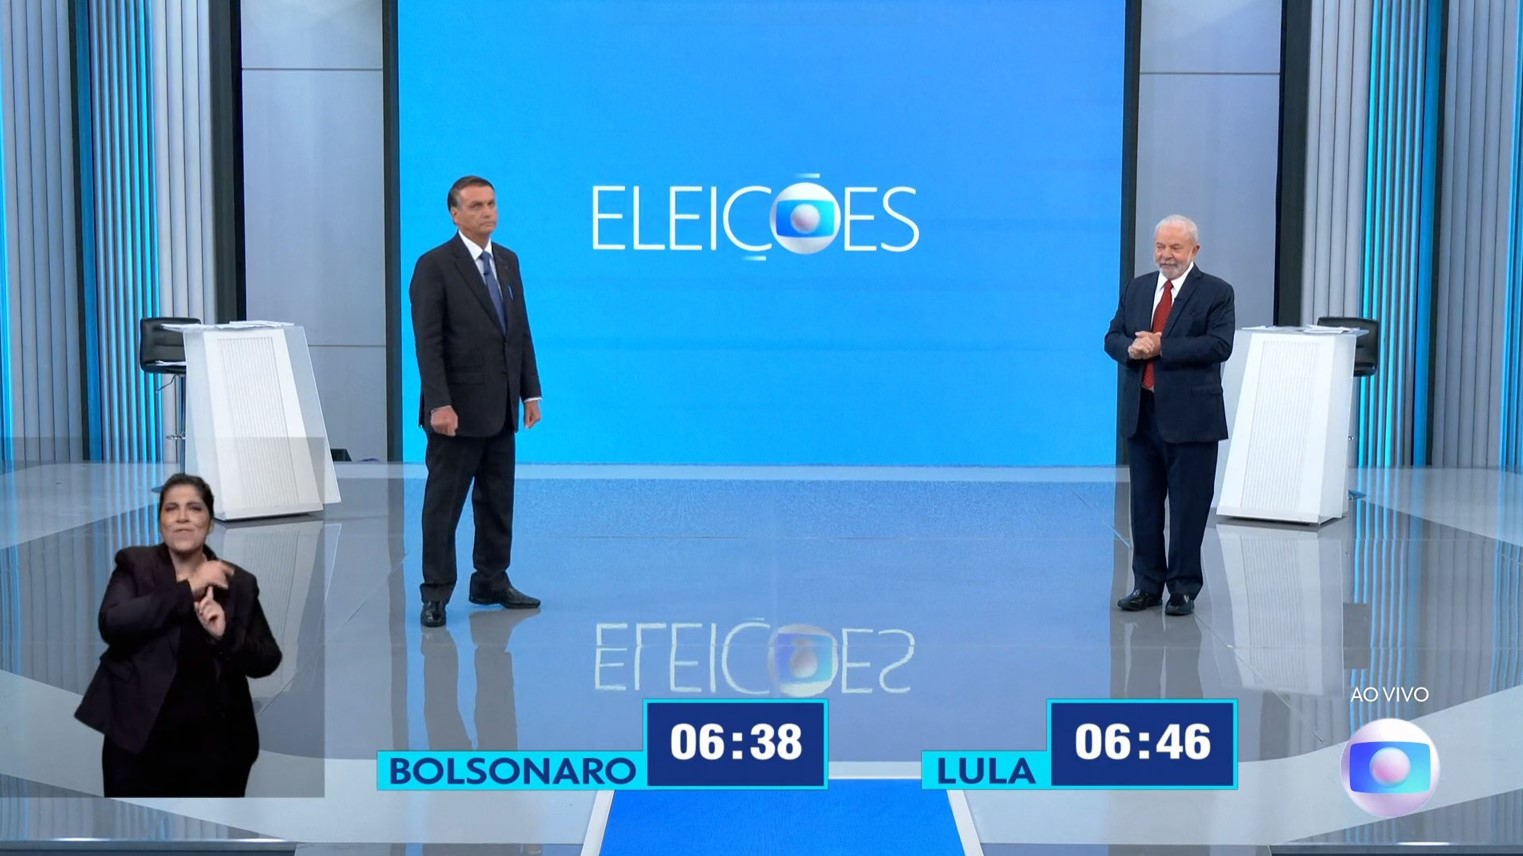 Foto: Reprodução/TV Globo - 28.10.22